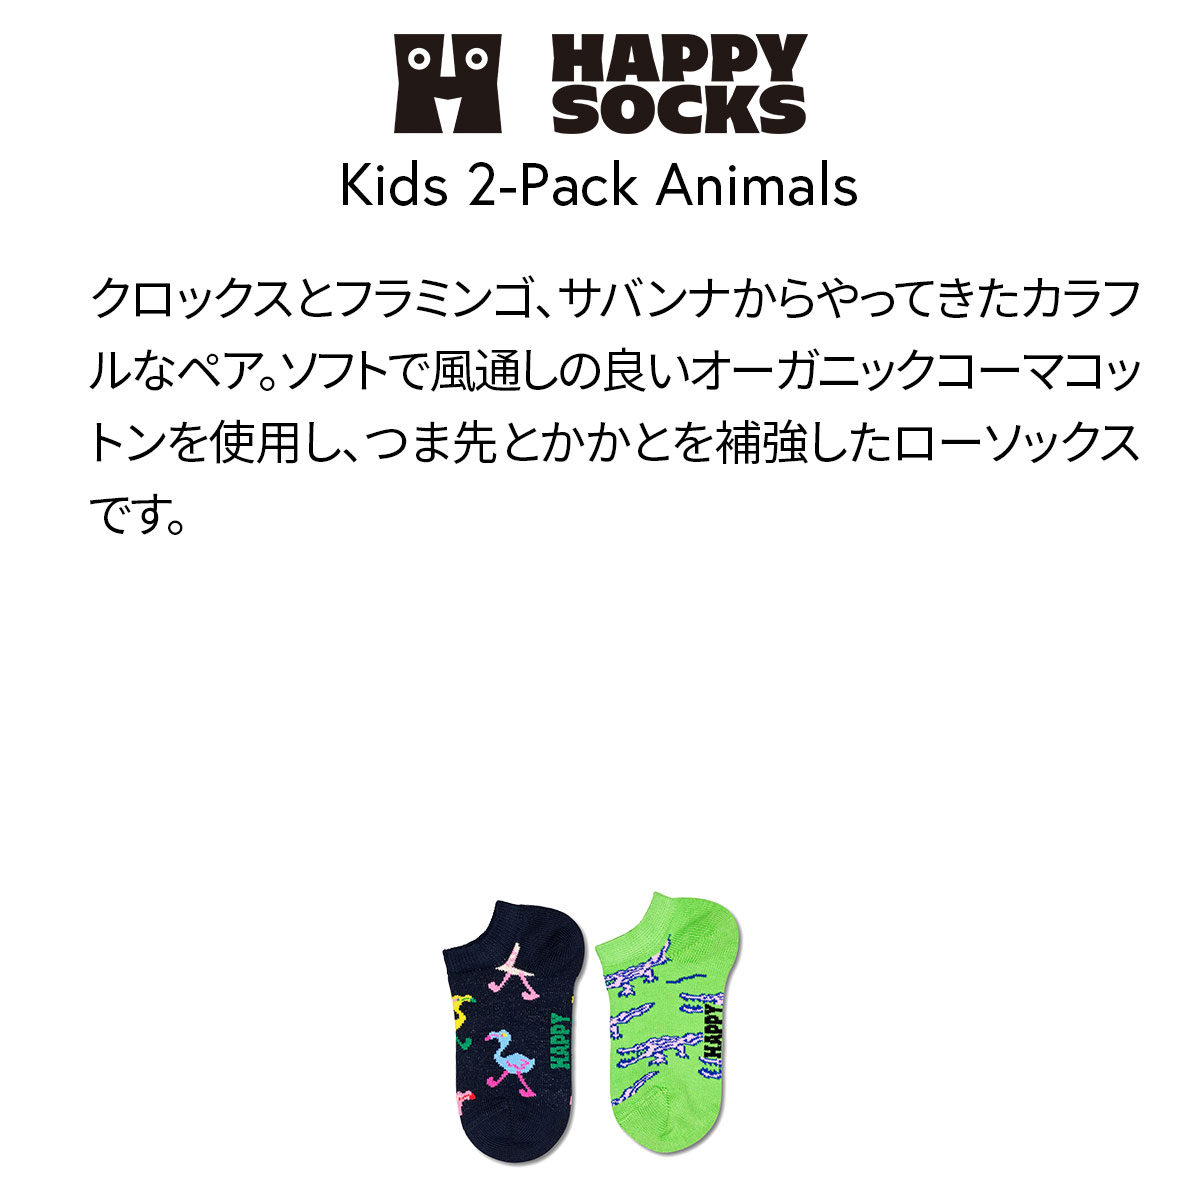 【2足セット】【24SS】Happy Socks ハッピーソックス Kids Animals ( アニマルズ ) 2-Pack Low Socks 2足組 どうぶつ柄 子供 スニーカー丈 綿混 ソックス KIDS ジュニア キッズ 